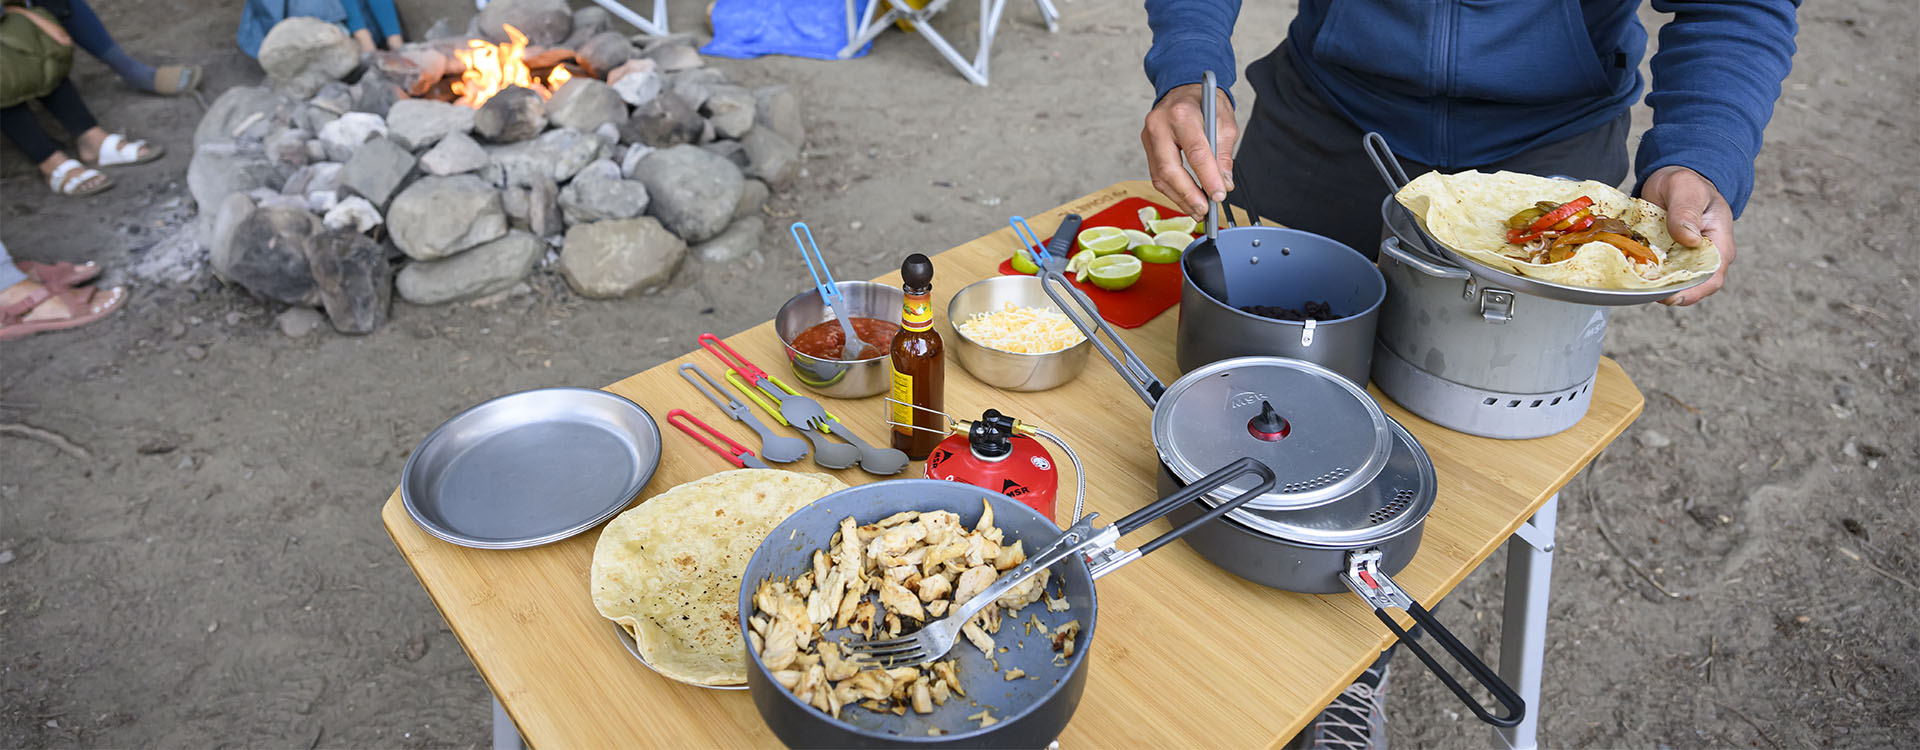 Kulinarische Camp-Grundausstattung - Alles, was du für dein nächstes Outdoor-Festmahl brauchst.